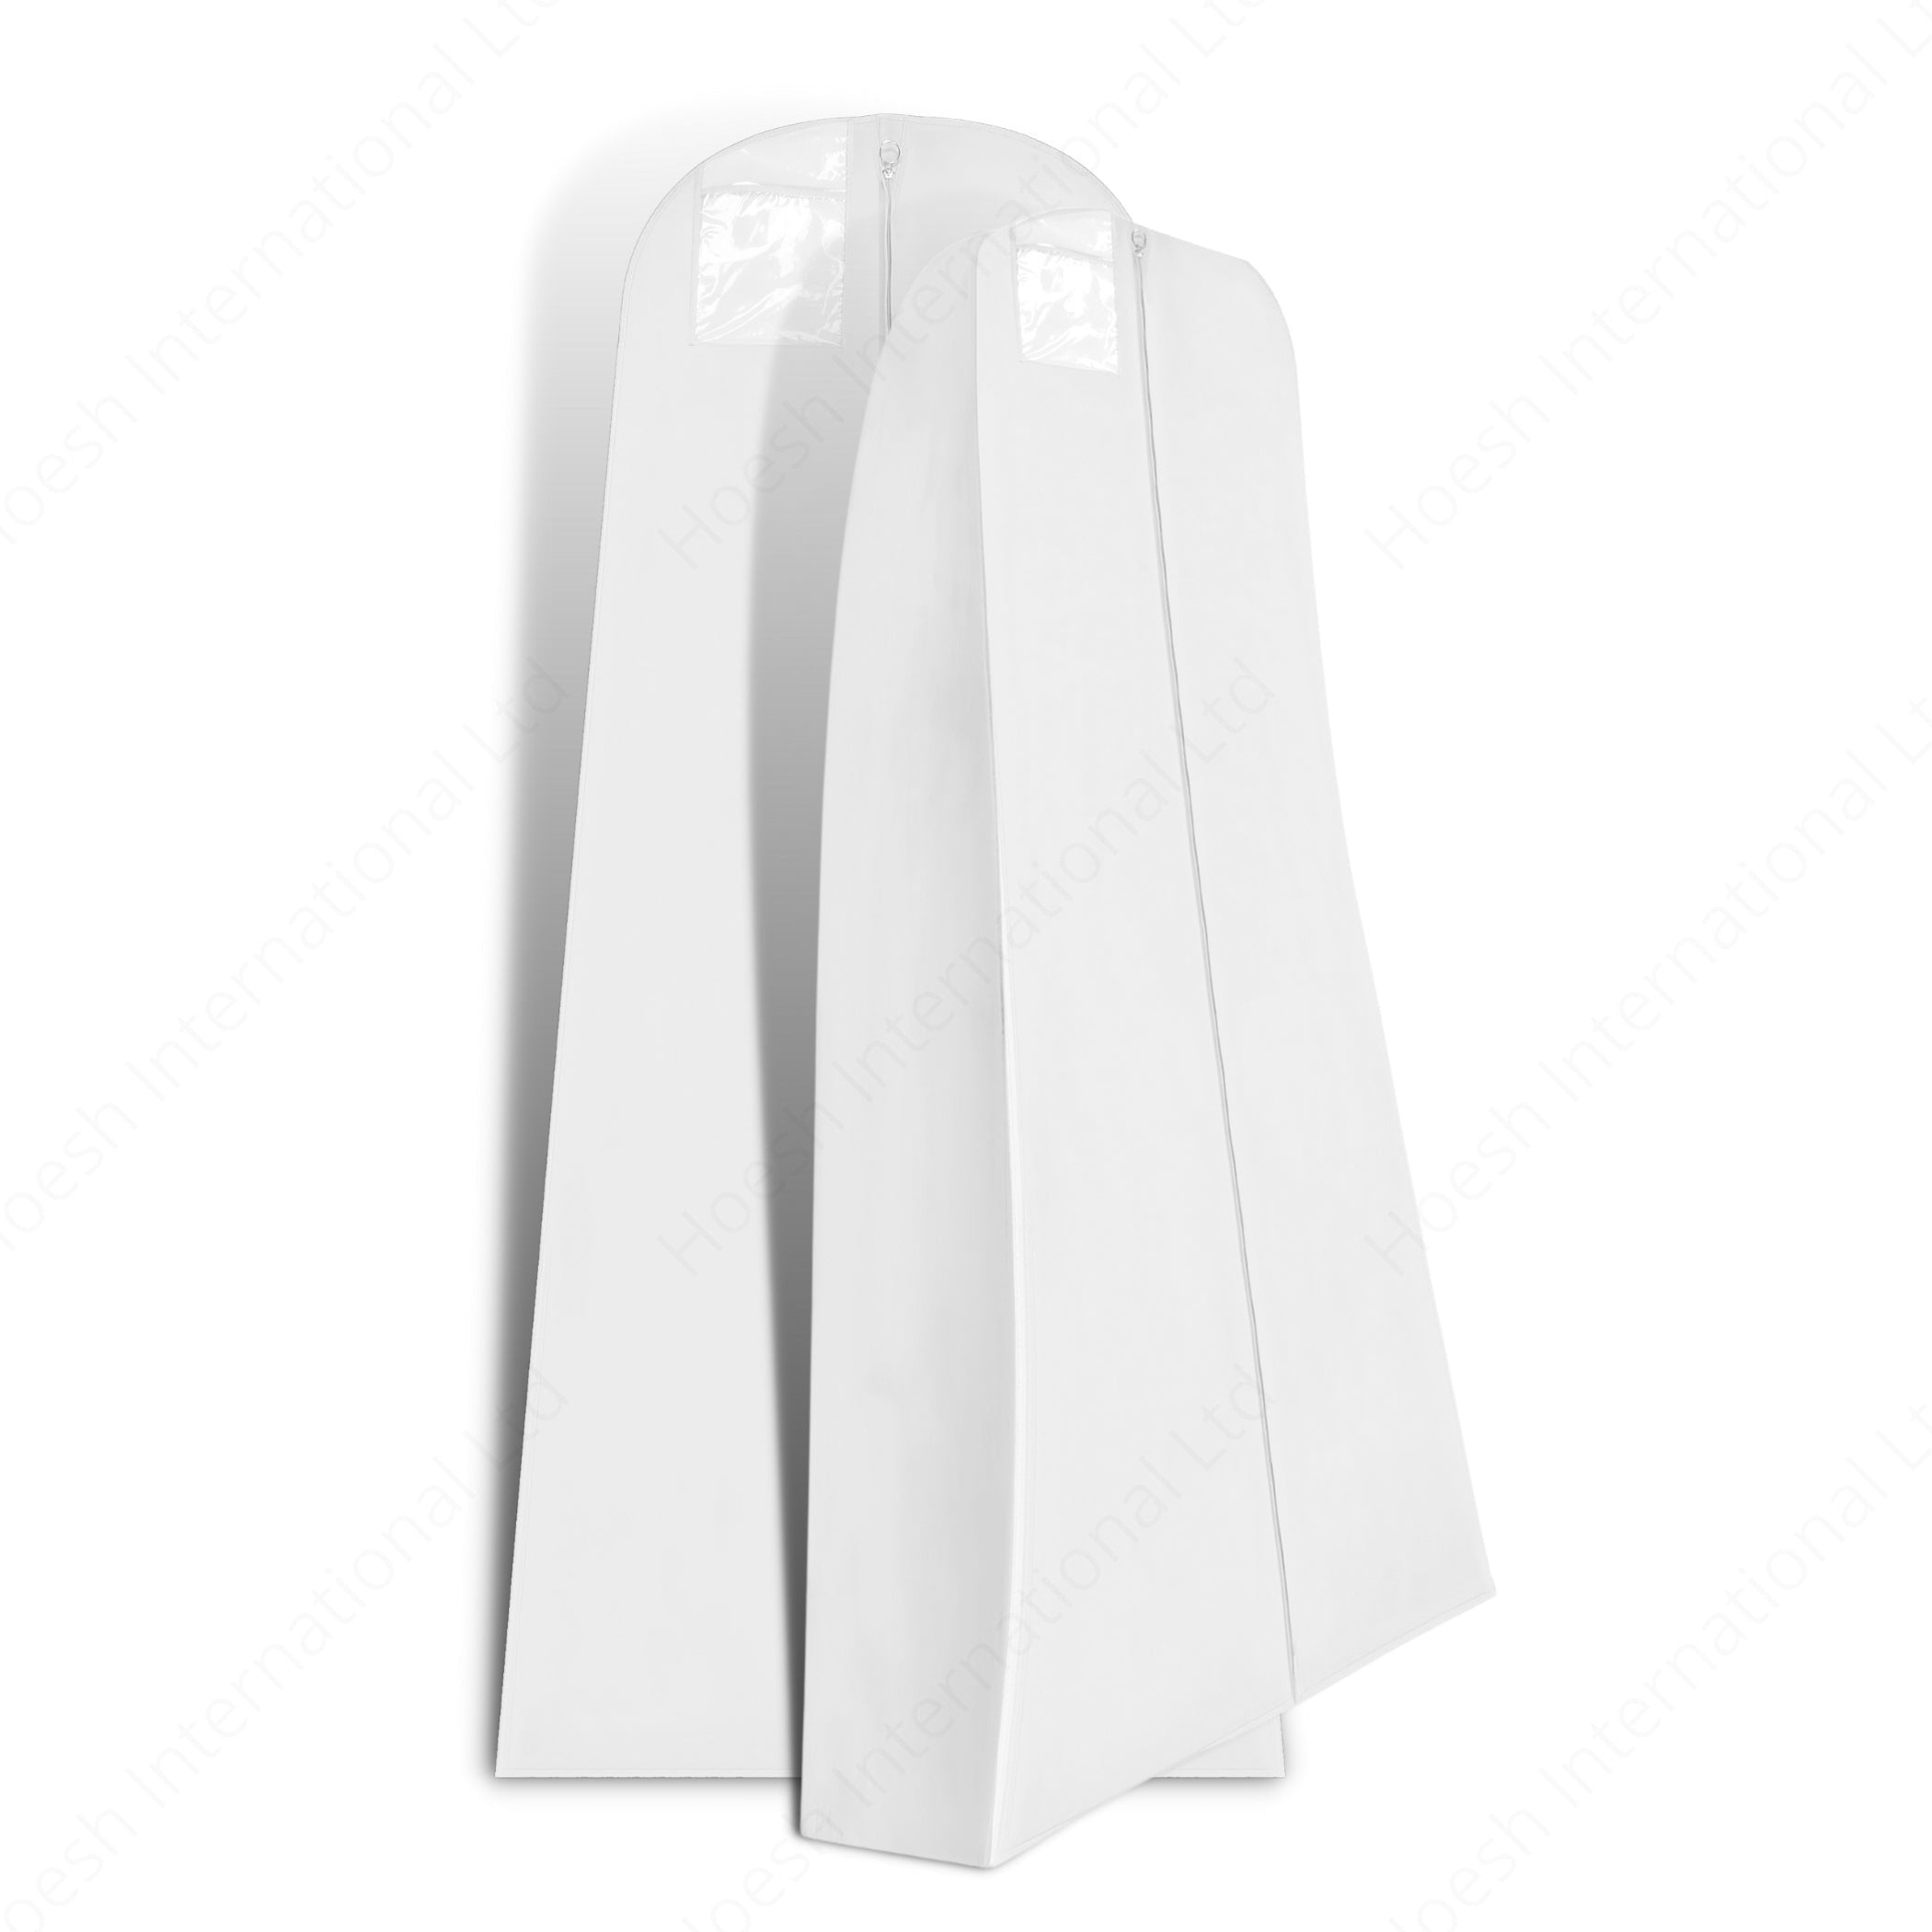 Wedding Dress Cover, 10” Full Gusset Breathable - Hoesh International Ltd